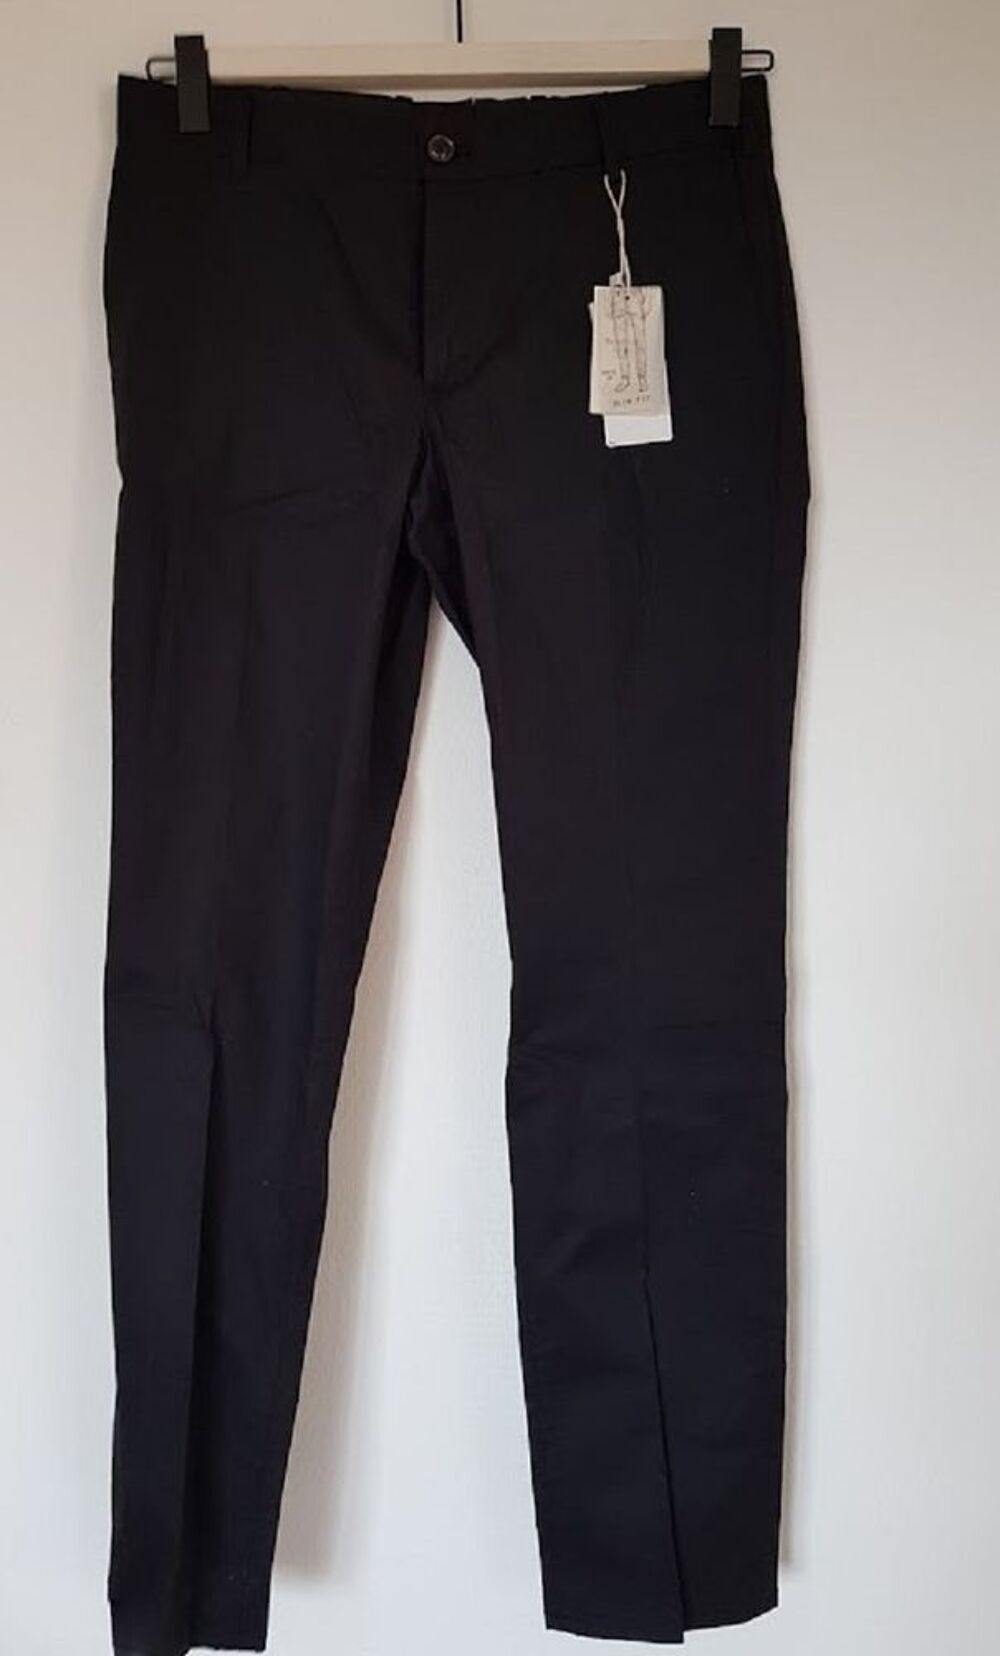 Pantalon noir slim fit, neuf, coton &eacute;cologique
Vtements